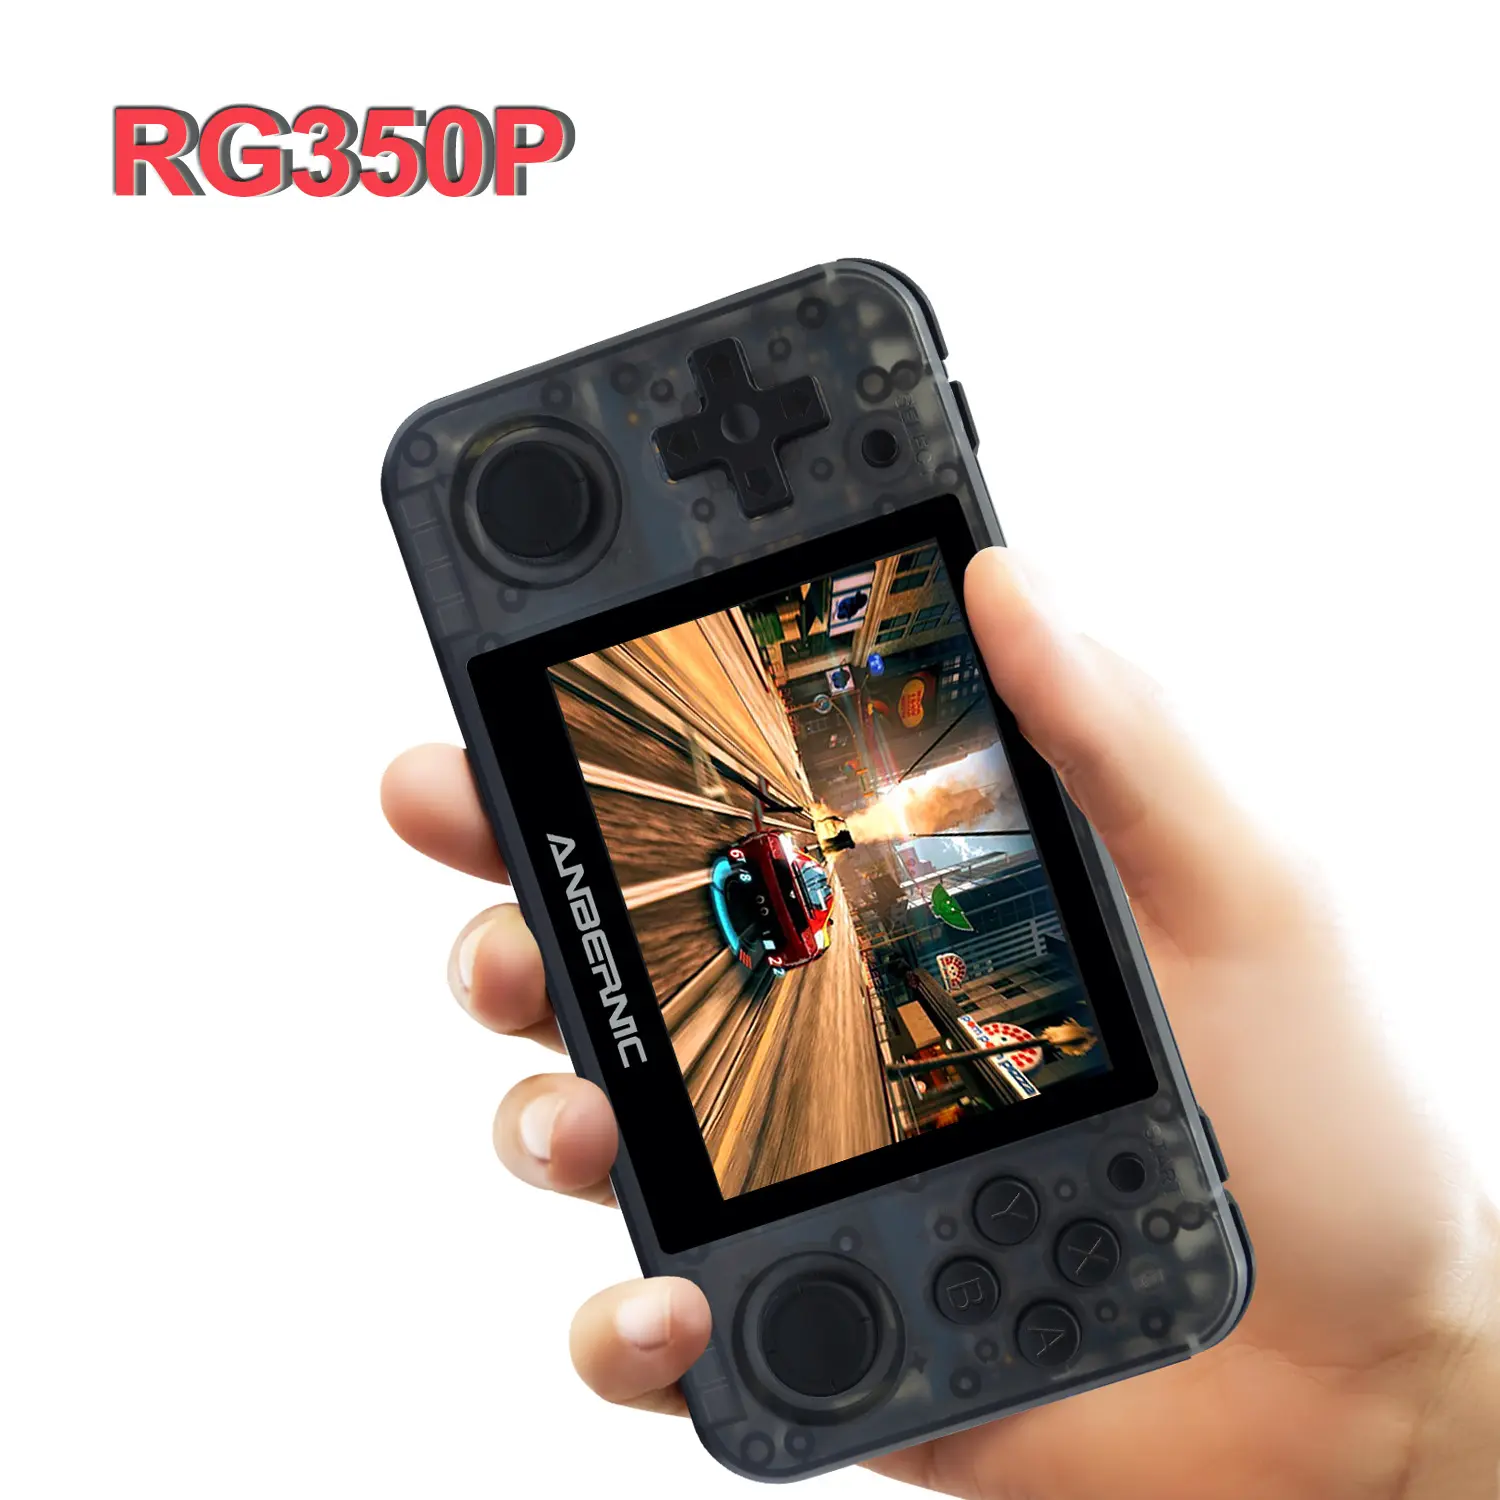 ANBERNIC RG350P 3.5 "IPSスクリーンポータブルビデオブラックゲームコンソール無料ゲームダウンロード